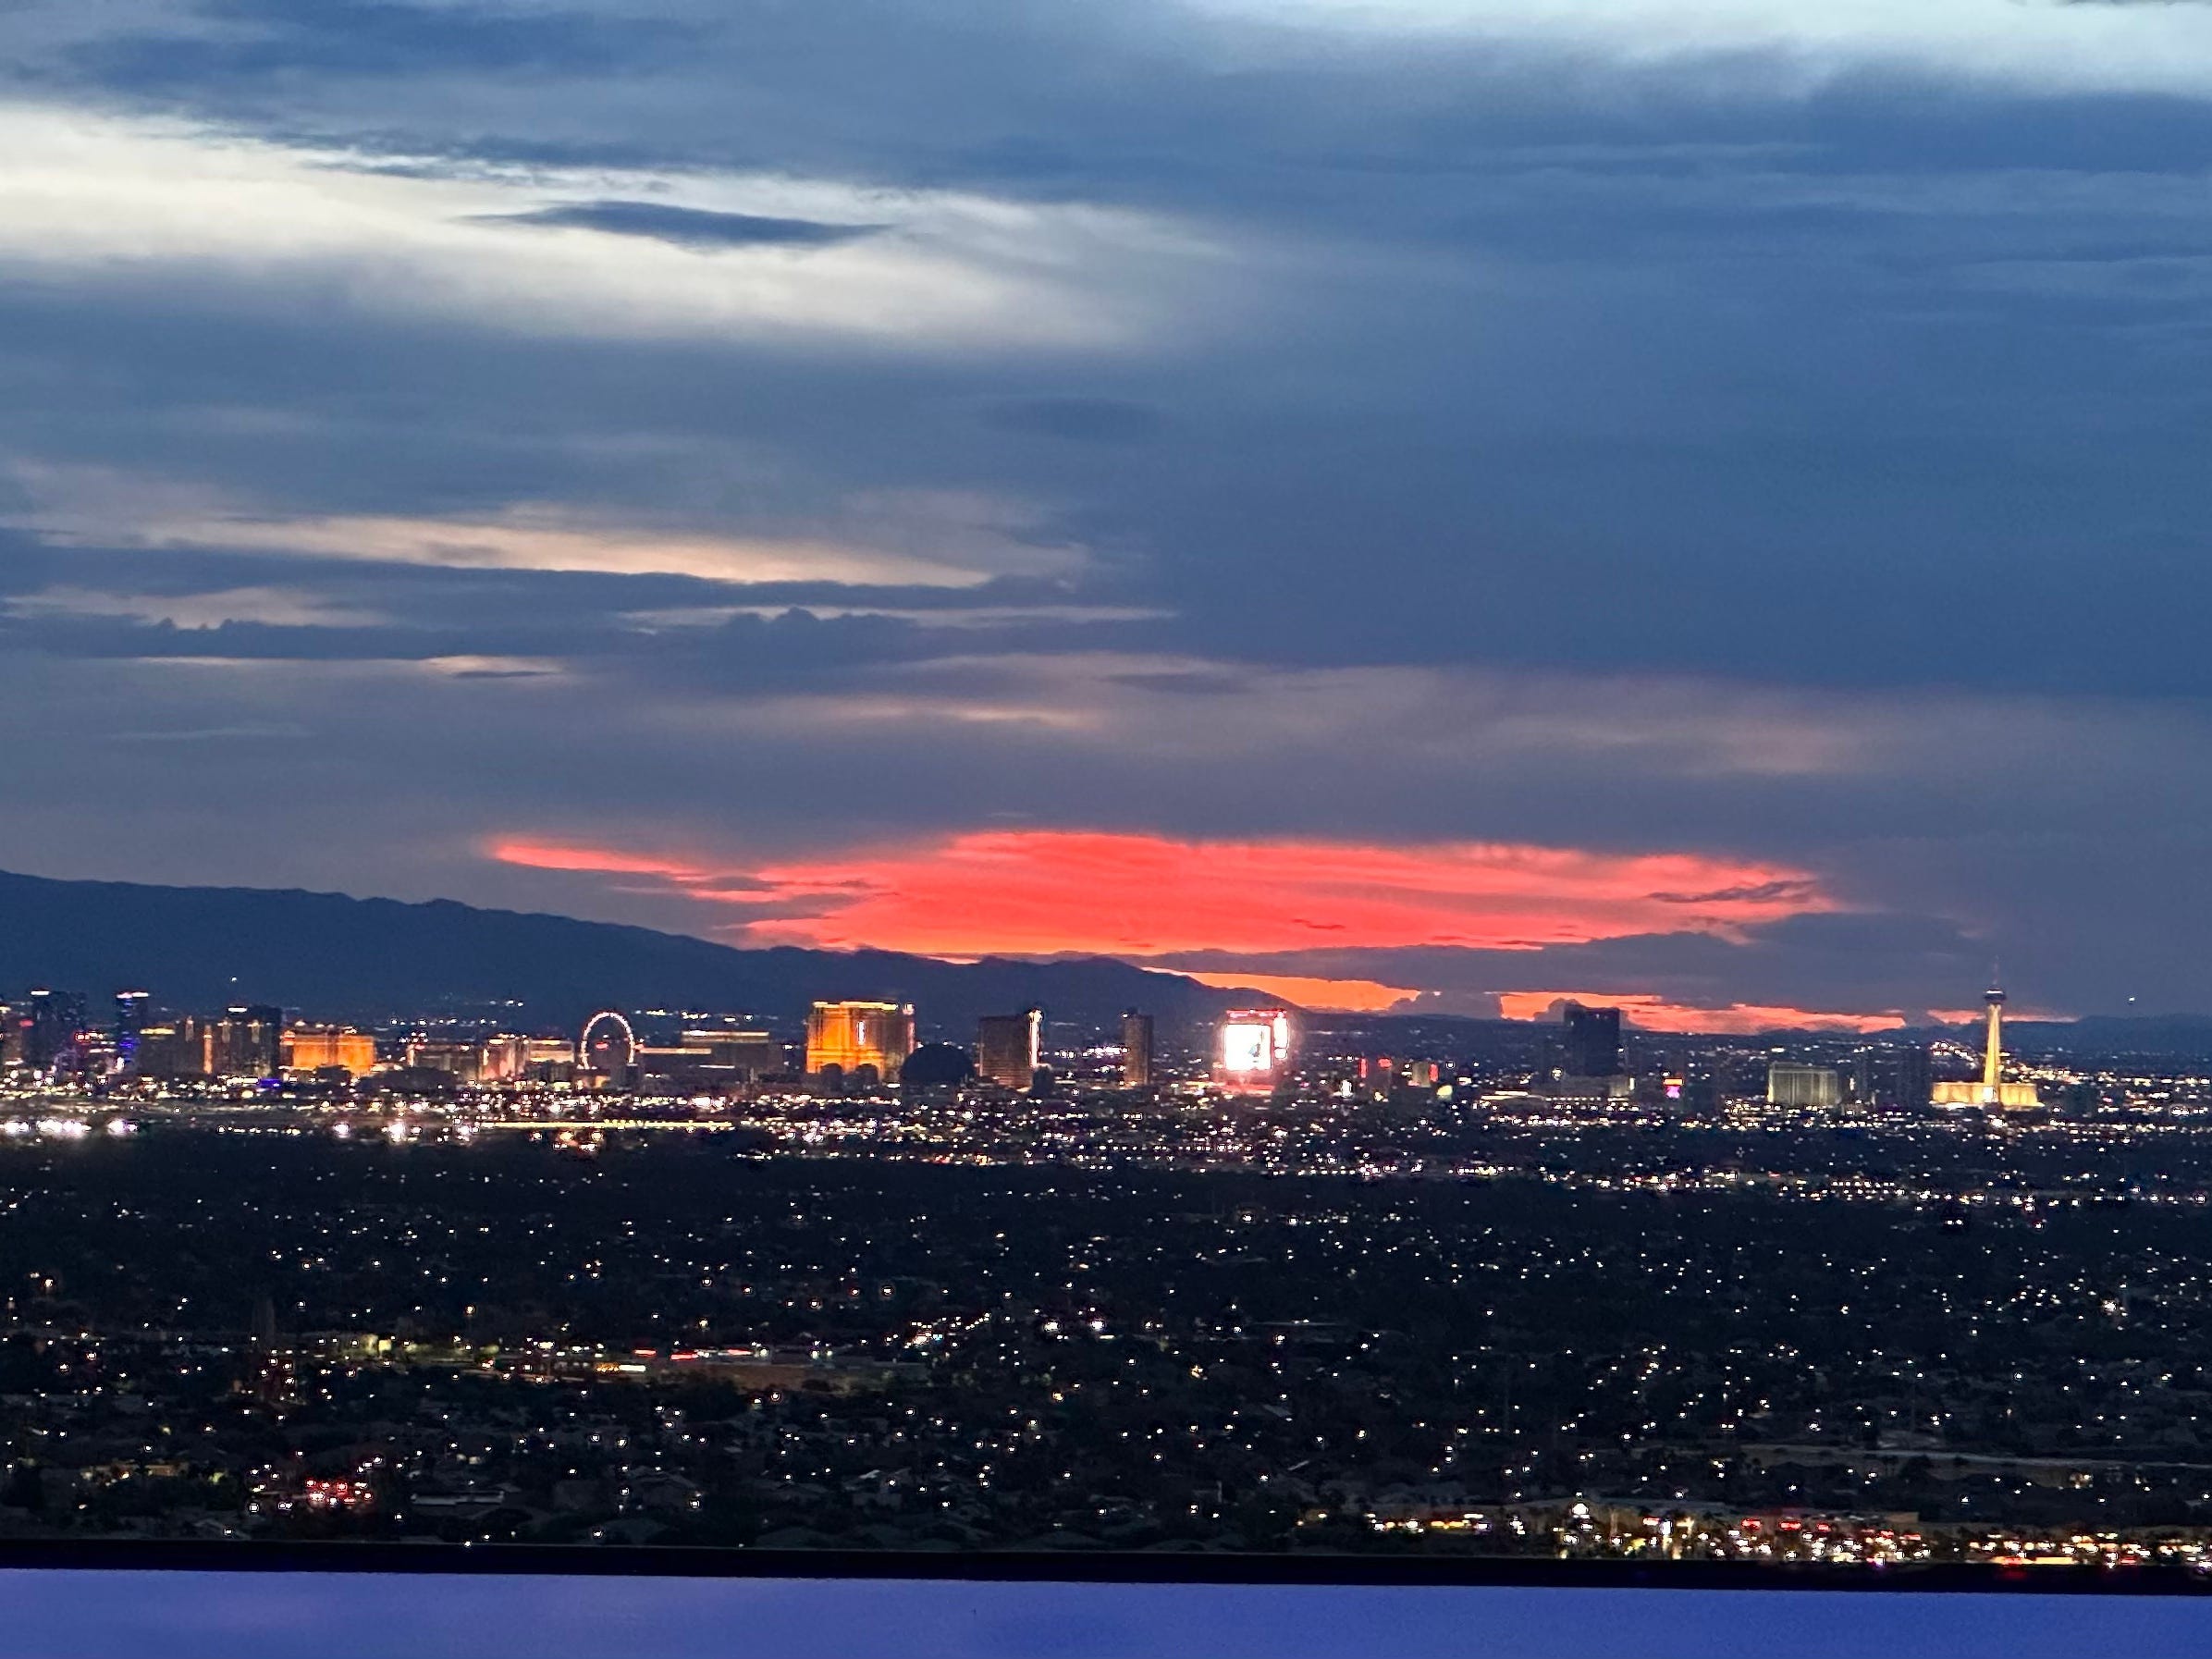 Ein Blick auf den Nachthimmel über Las Vegas, wo die untergehende Sonne ein helles rotes Licht gegen den bewölkten Himmel geworfen hat.